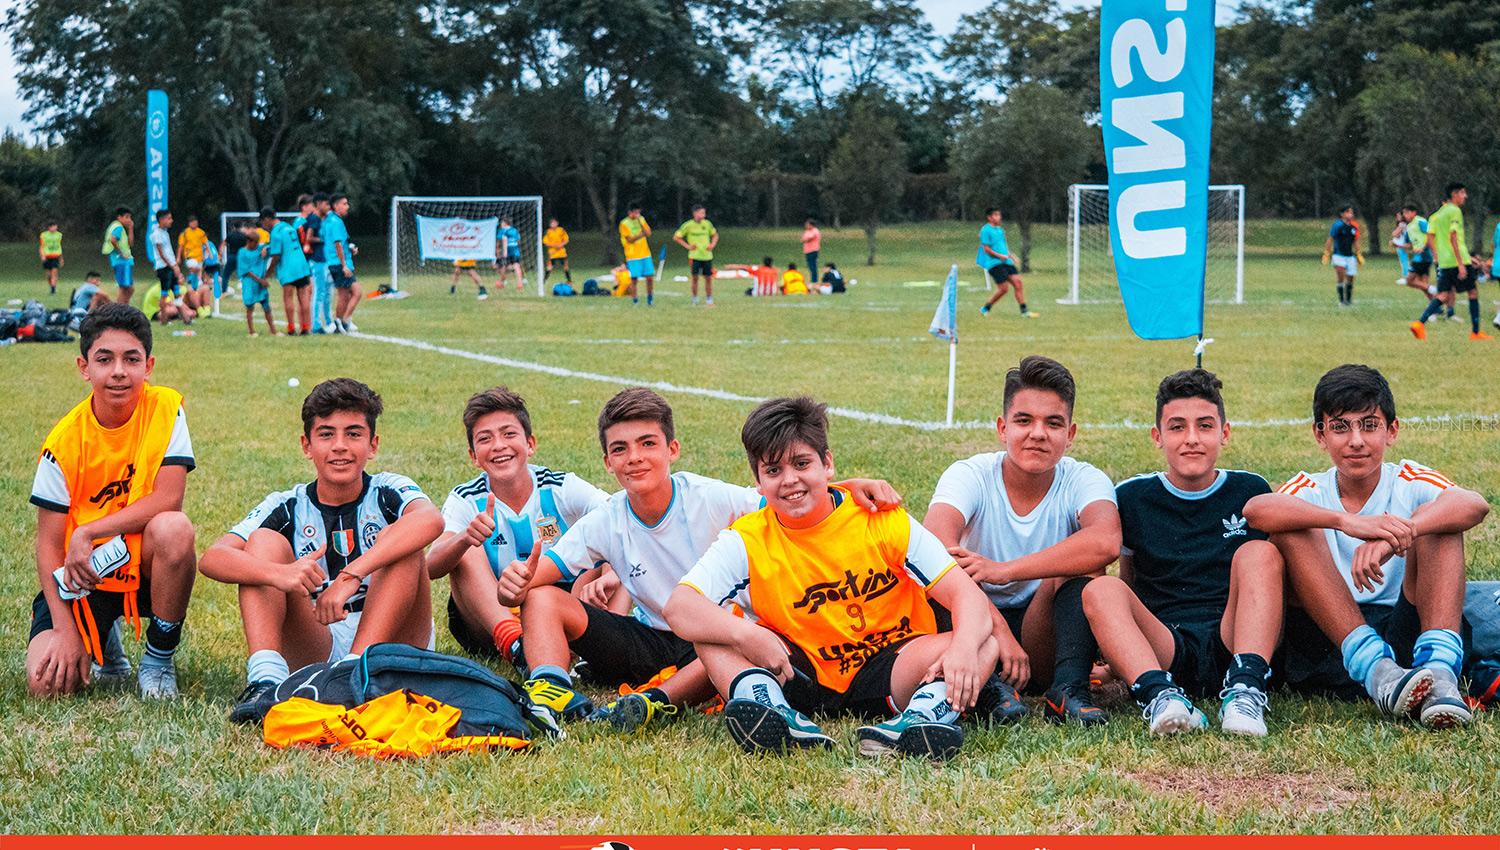  Más de 700 estudiantes participan en el torneo de fútbol organizado por la Unsta